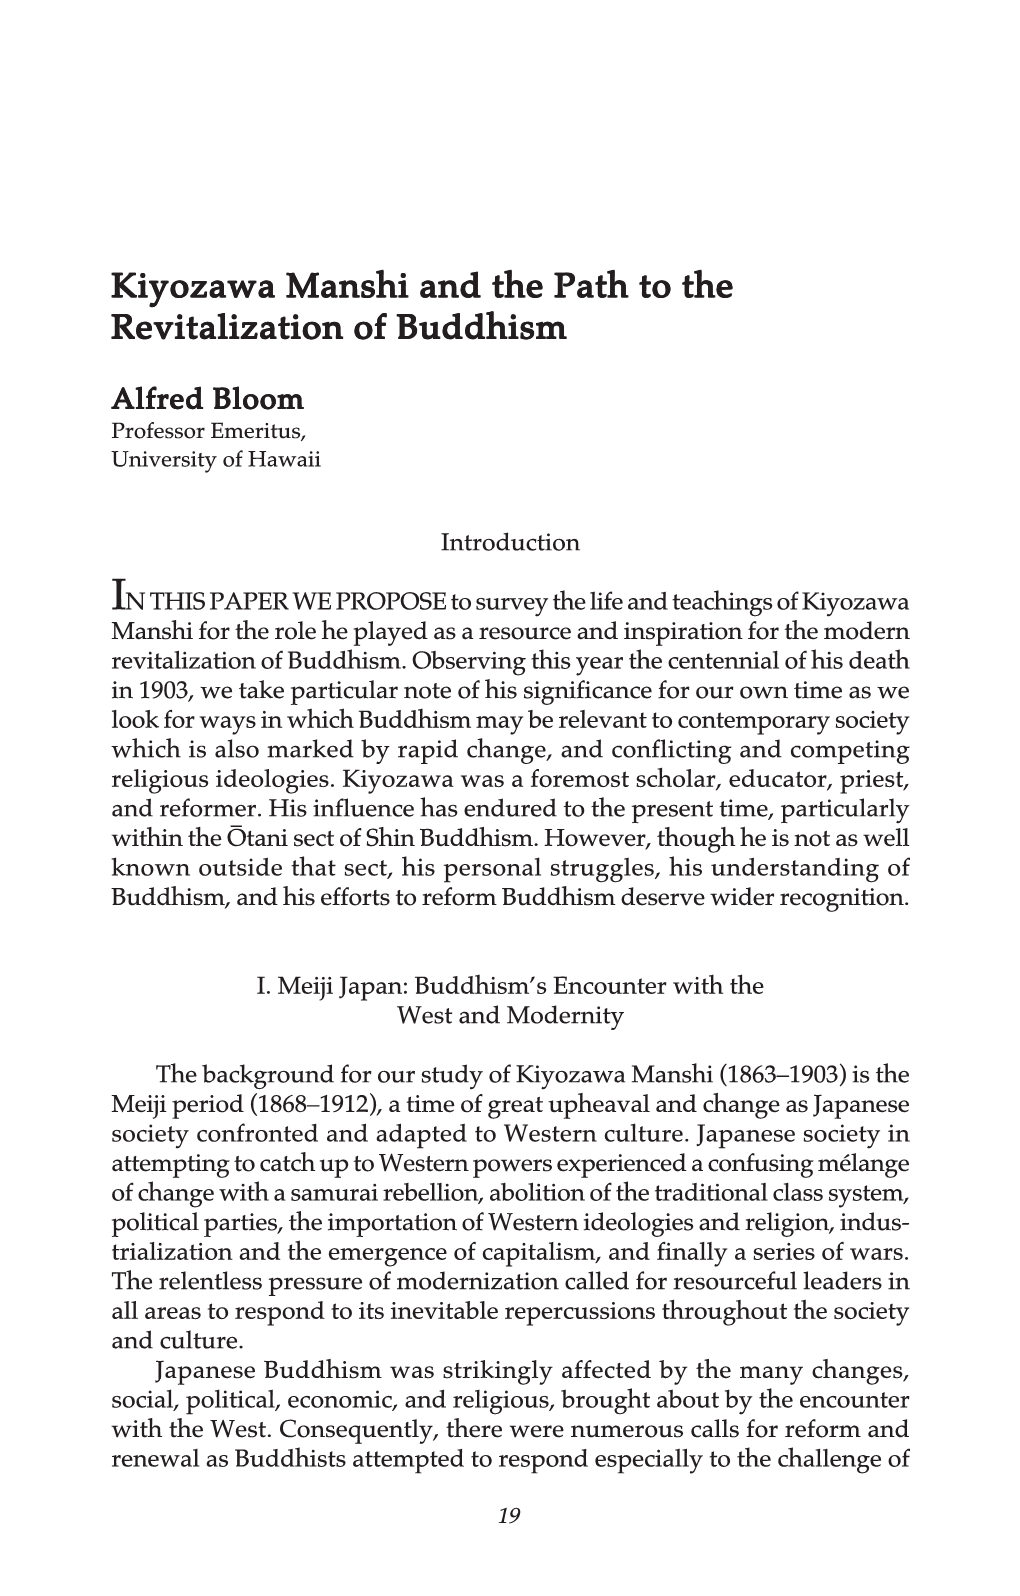 Kiyozawa Manshi and the Path to the Revitalization of Buddhism